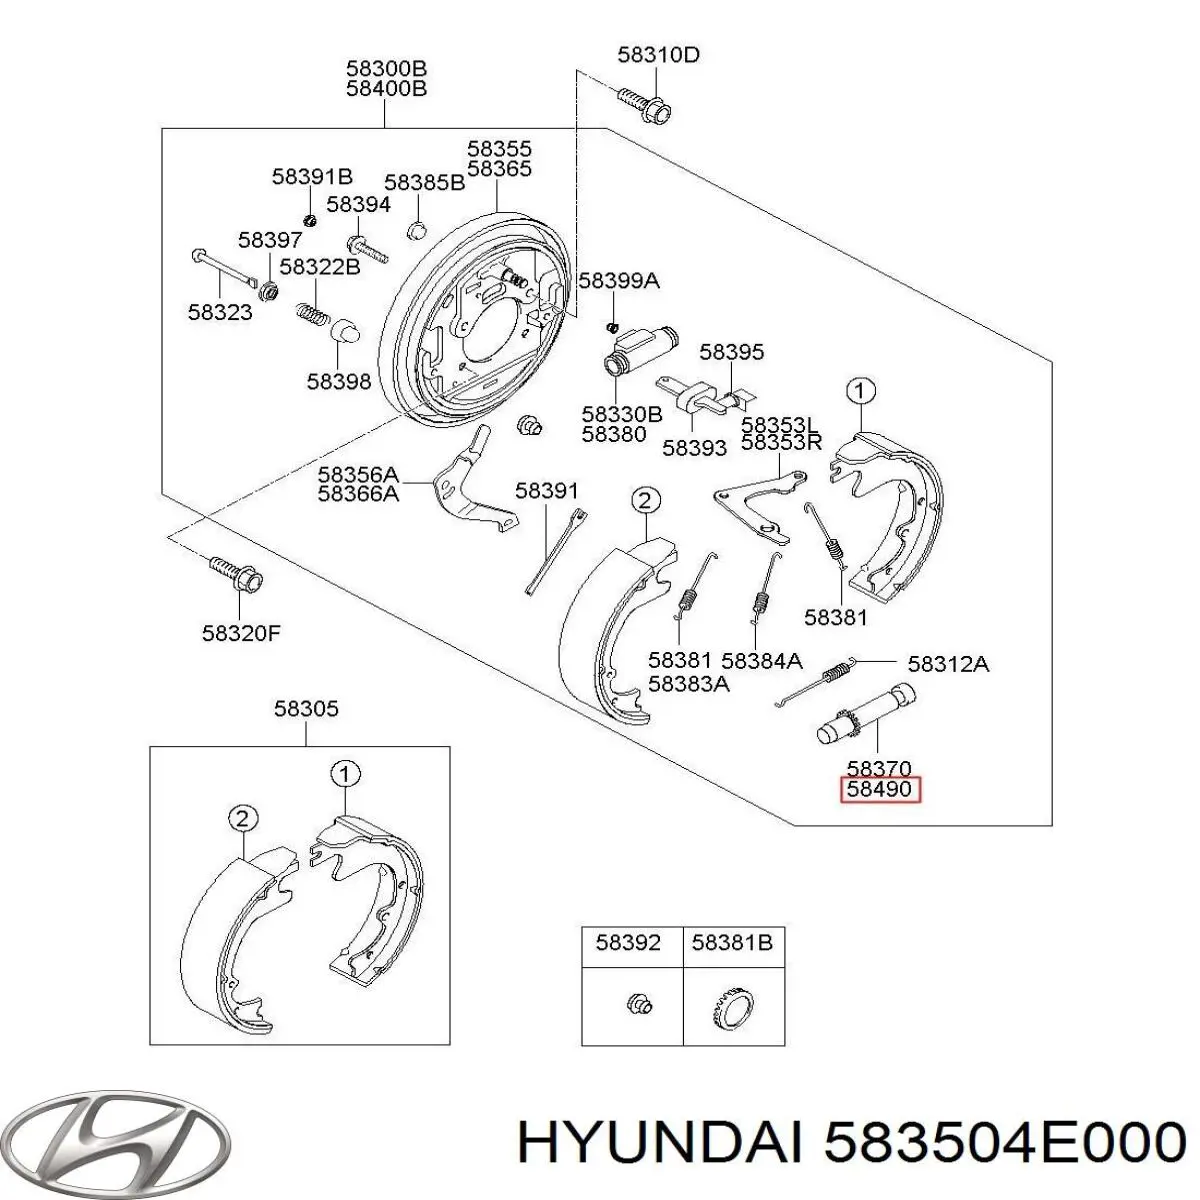 583504E000 Hyundai/Kia zapatas de frenos de tambor traseras